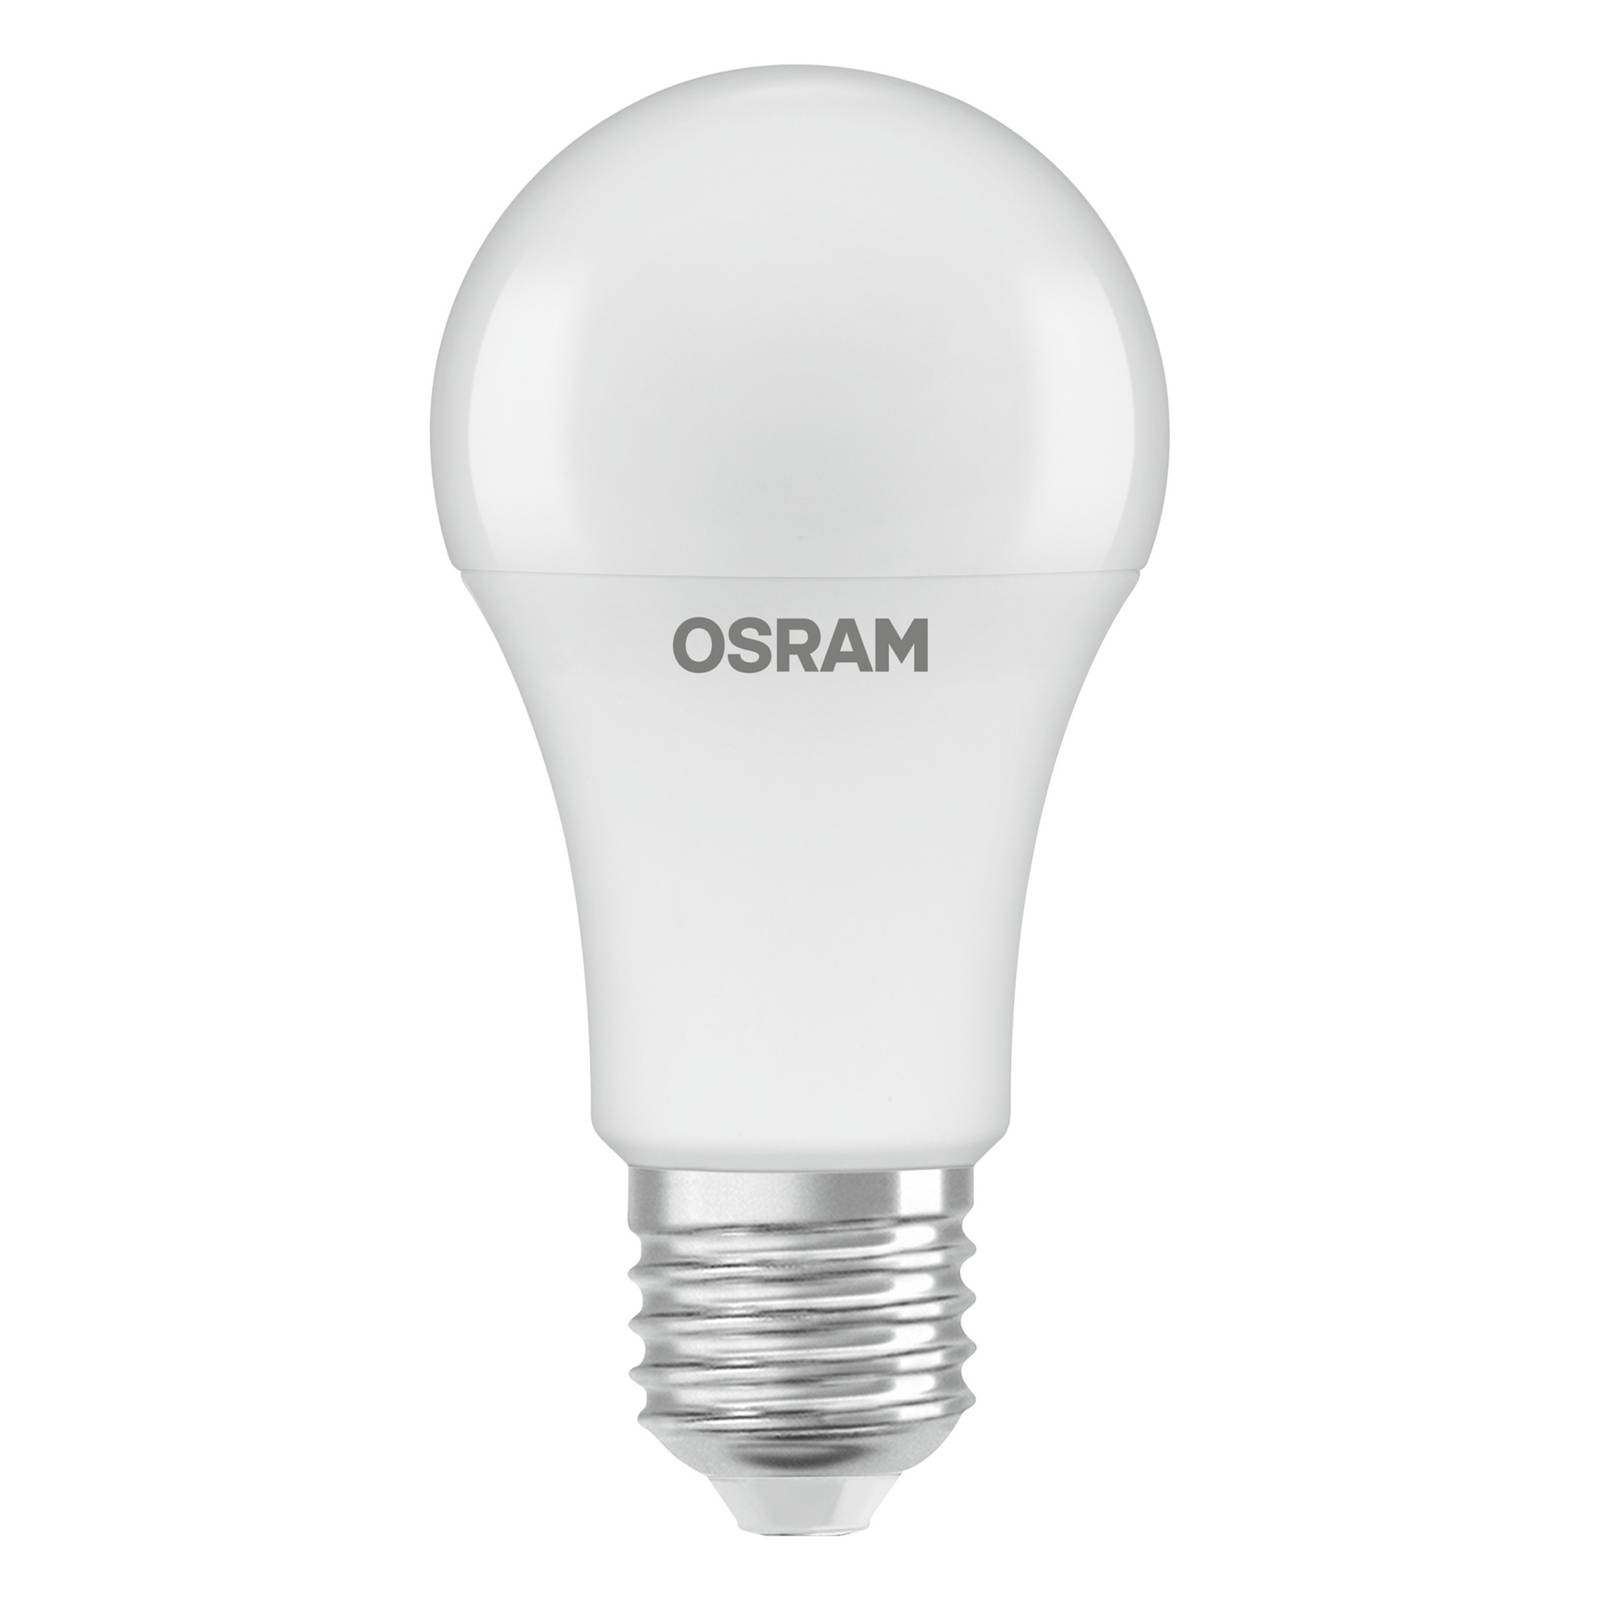 OSRAM OSRAM LED žárovka E27 8,8W 827 senzor denní světlo